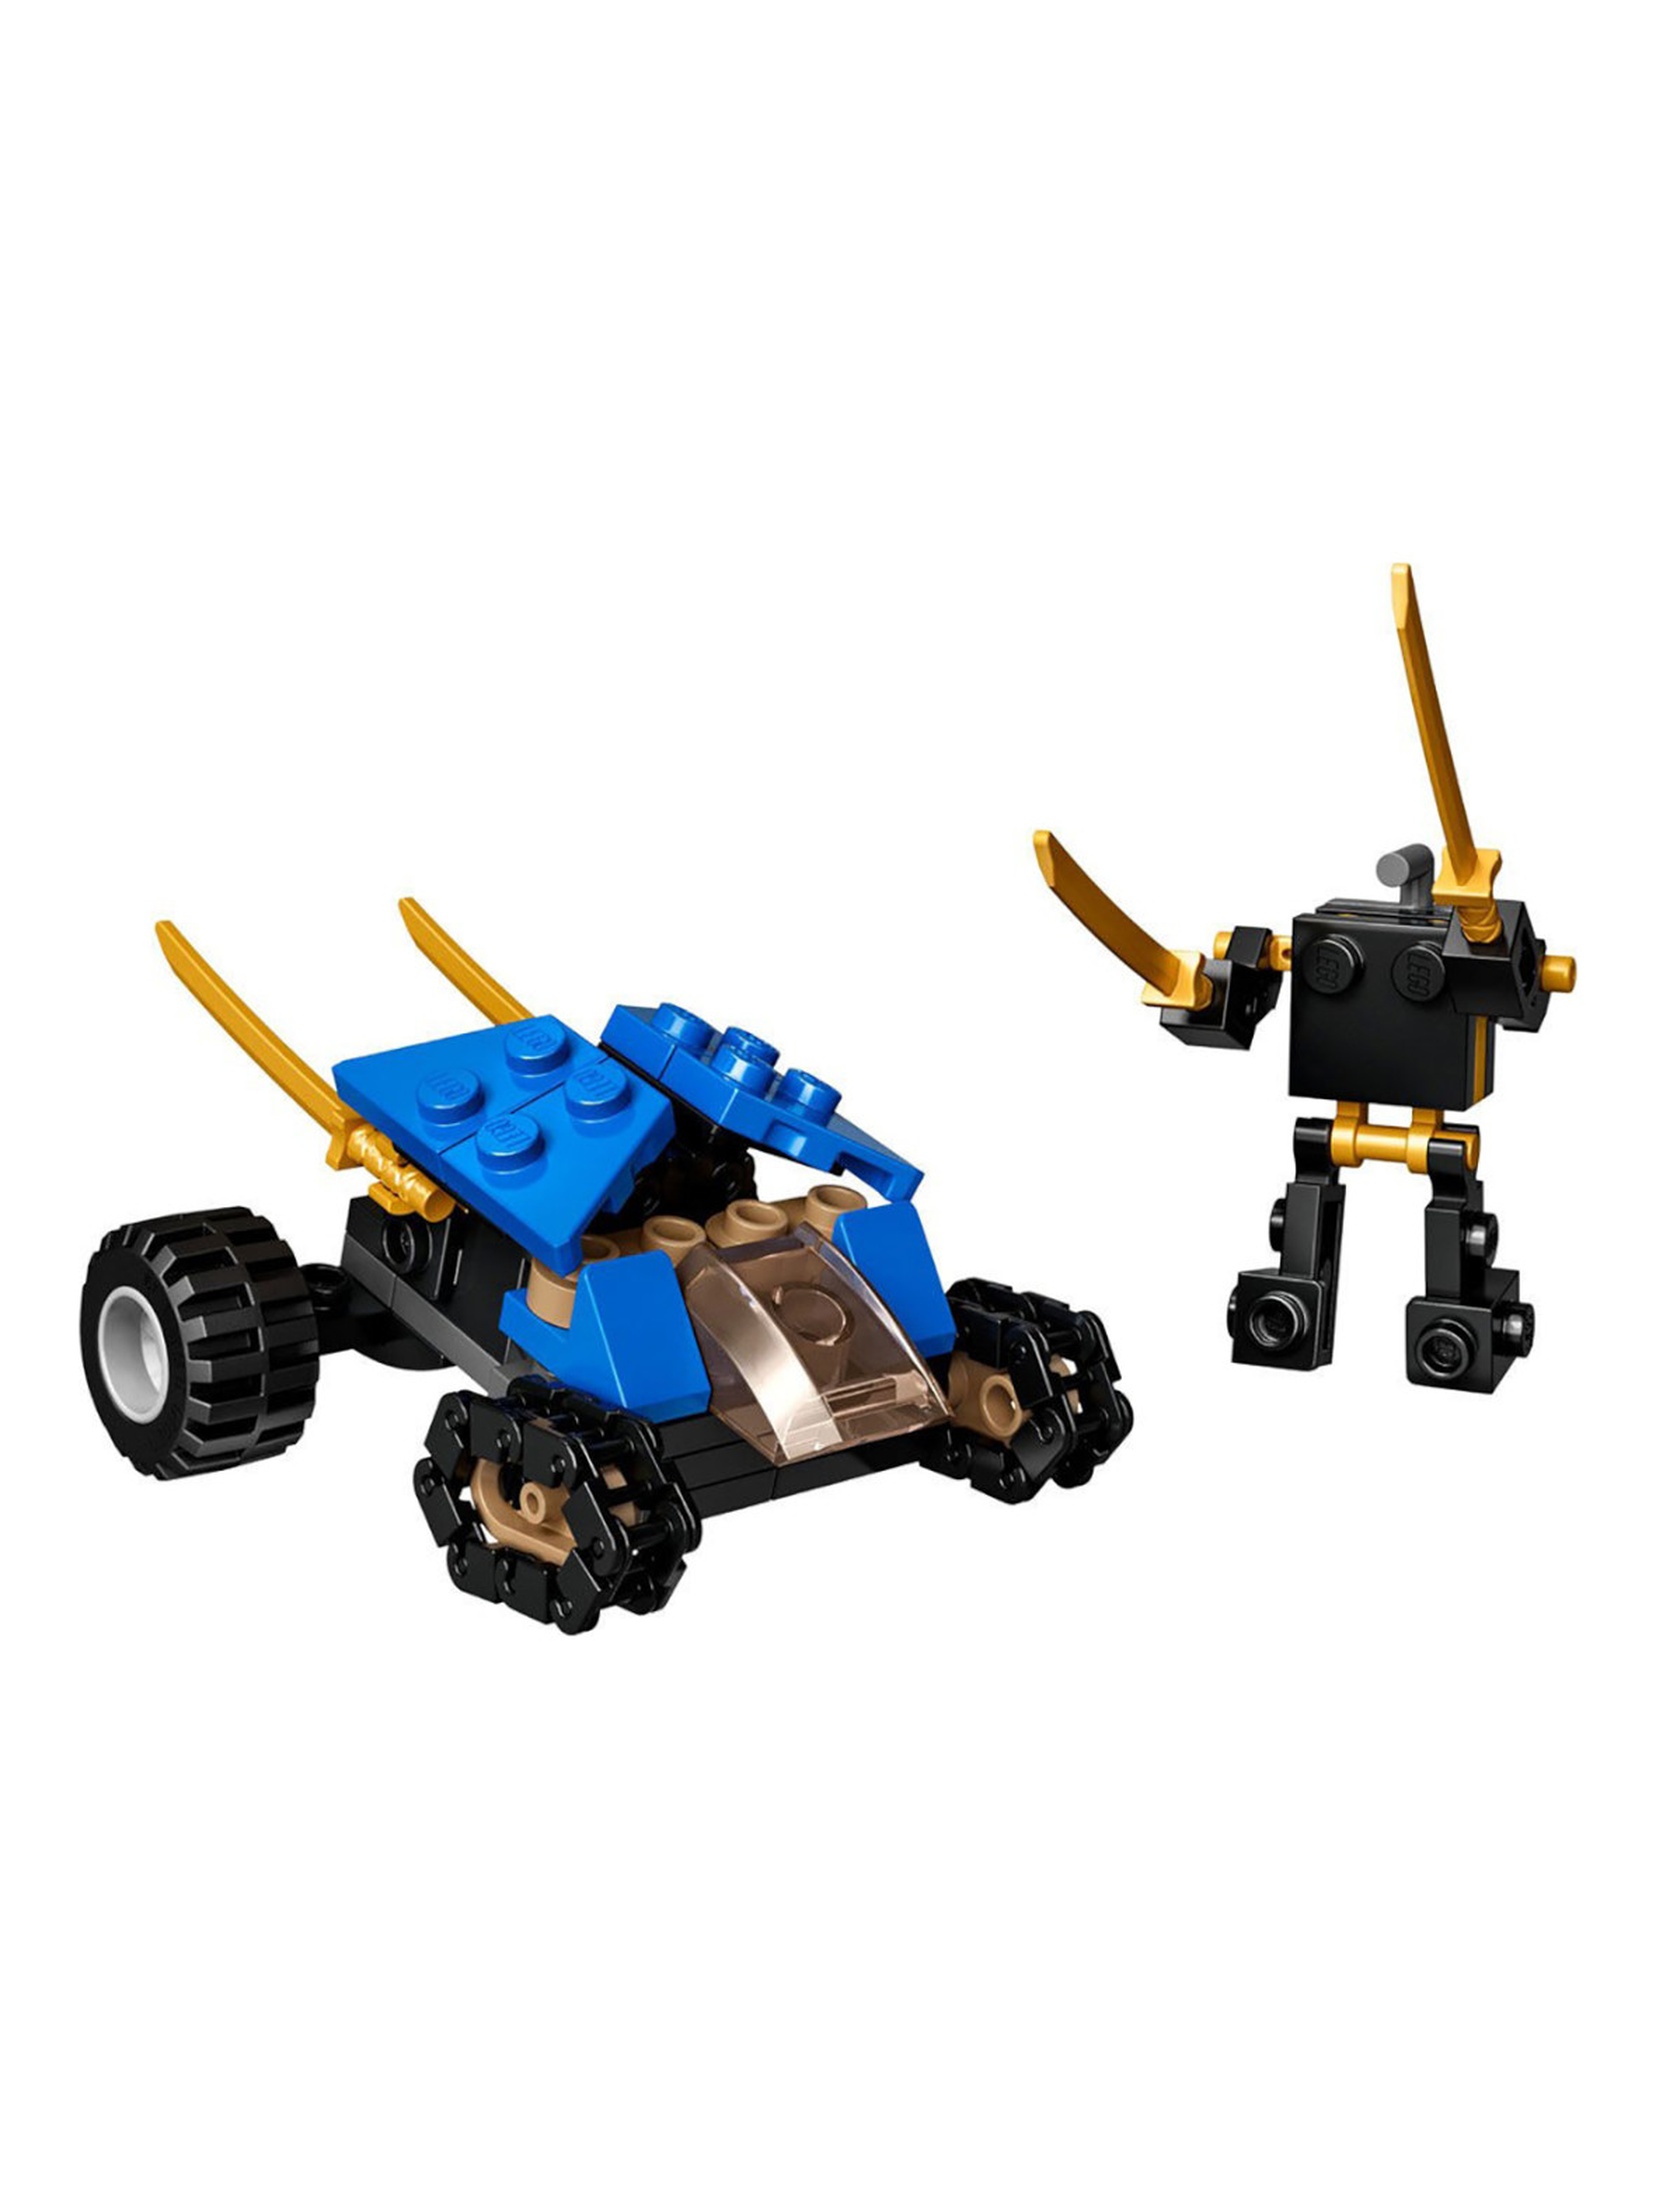 Klocki LEGO Ninjago 30592 Miniaturowy piorunowy pojazd - 69 elementy, wiek 7 +